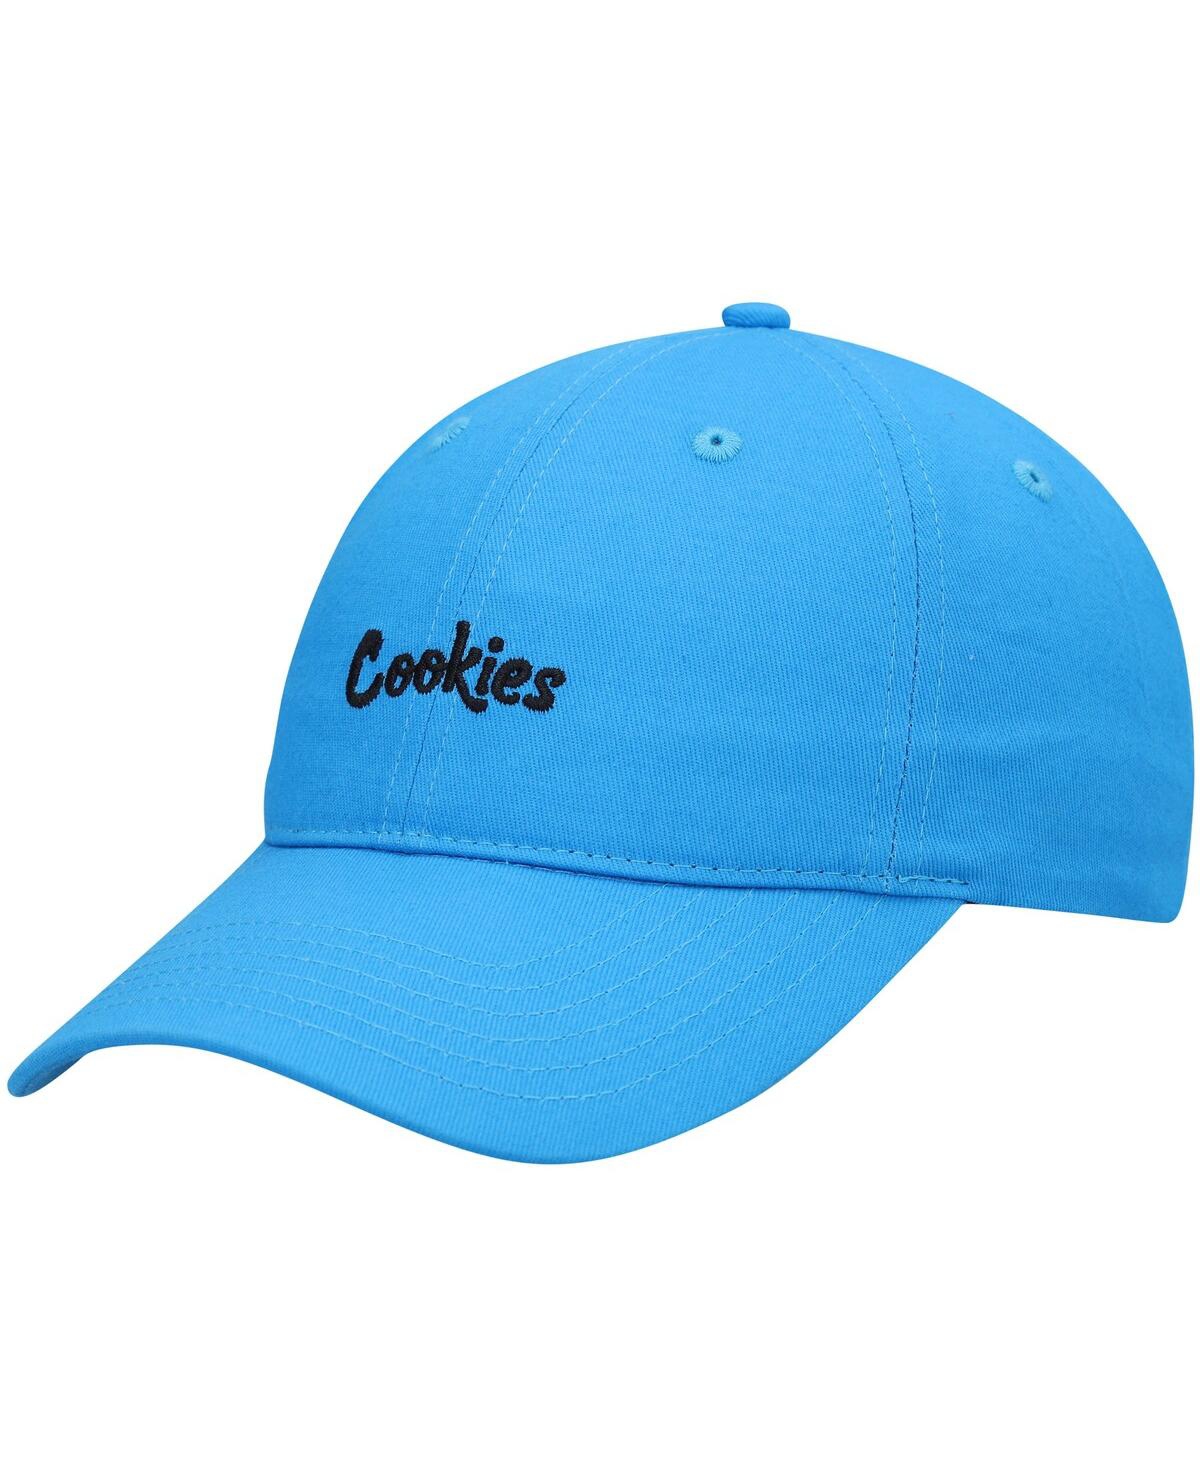 Cookies Men's  Blue Original Mint Solid Dad Adjustable Hat